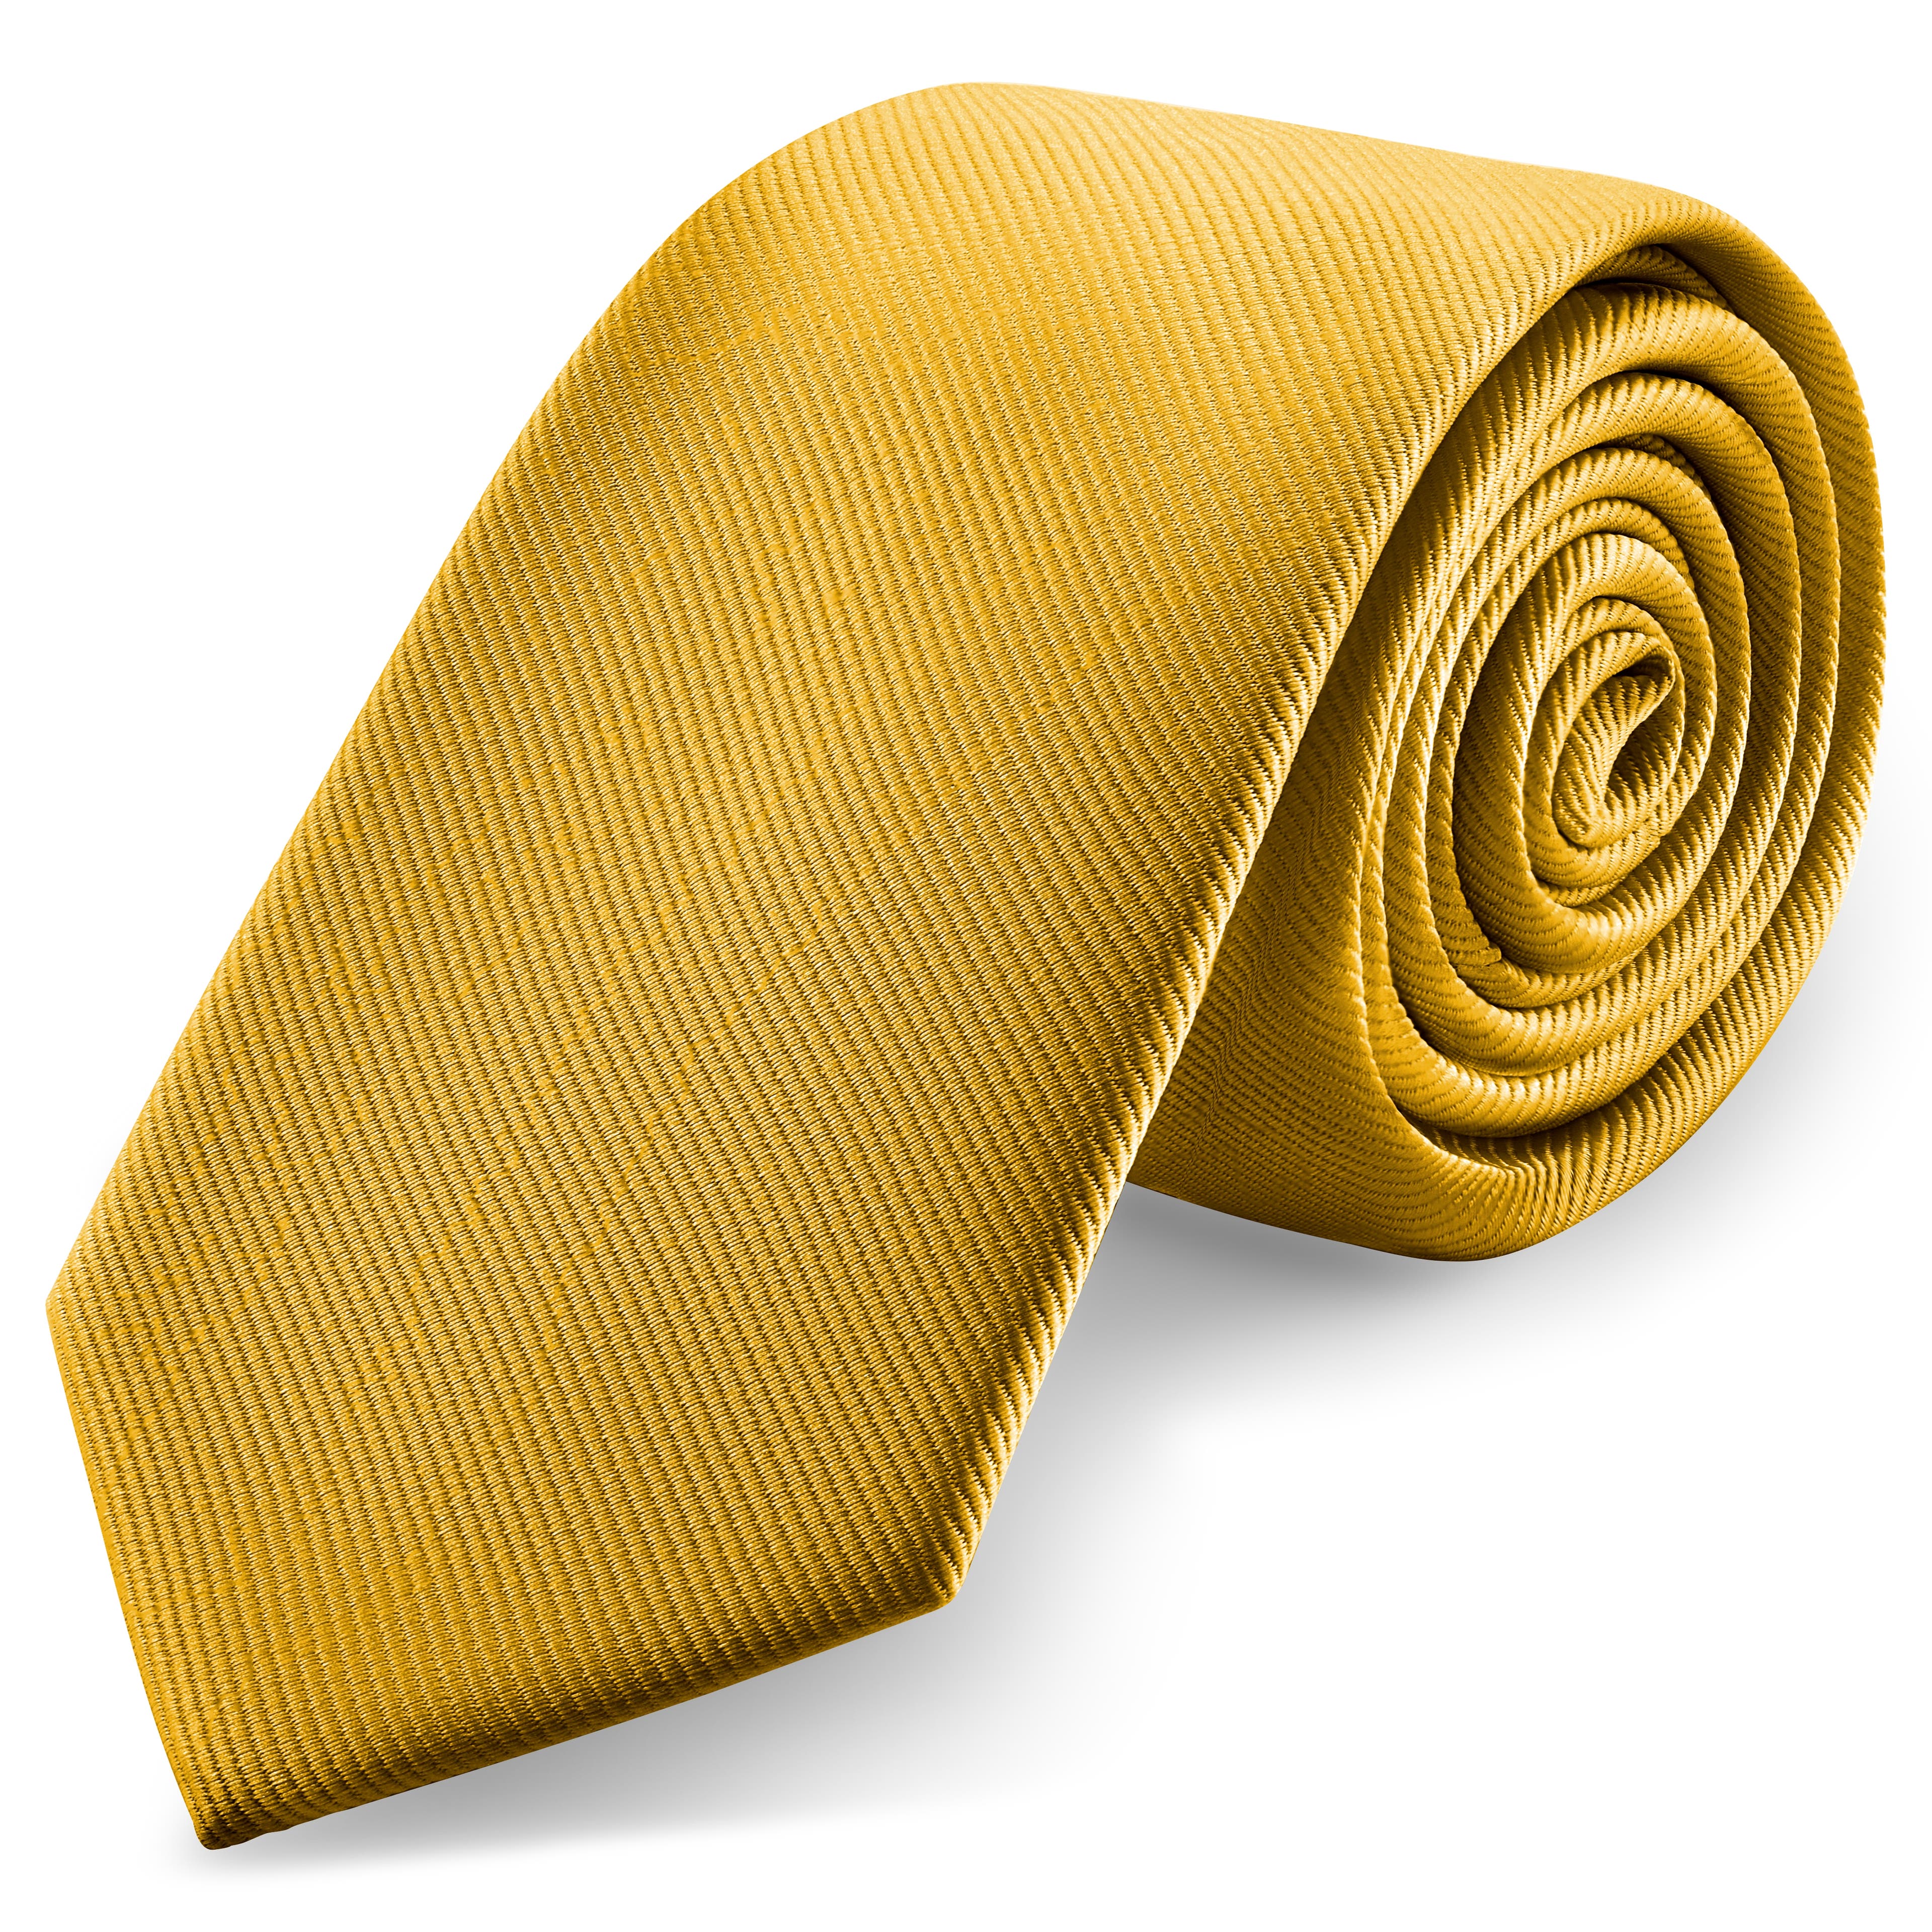 Cravate en gros-grain brun doré de 8 cm